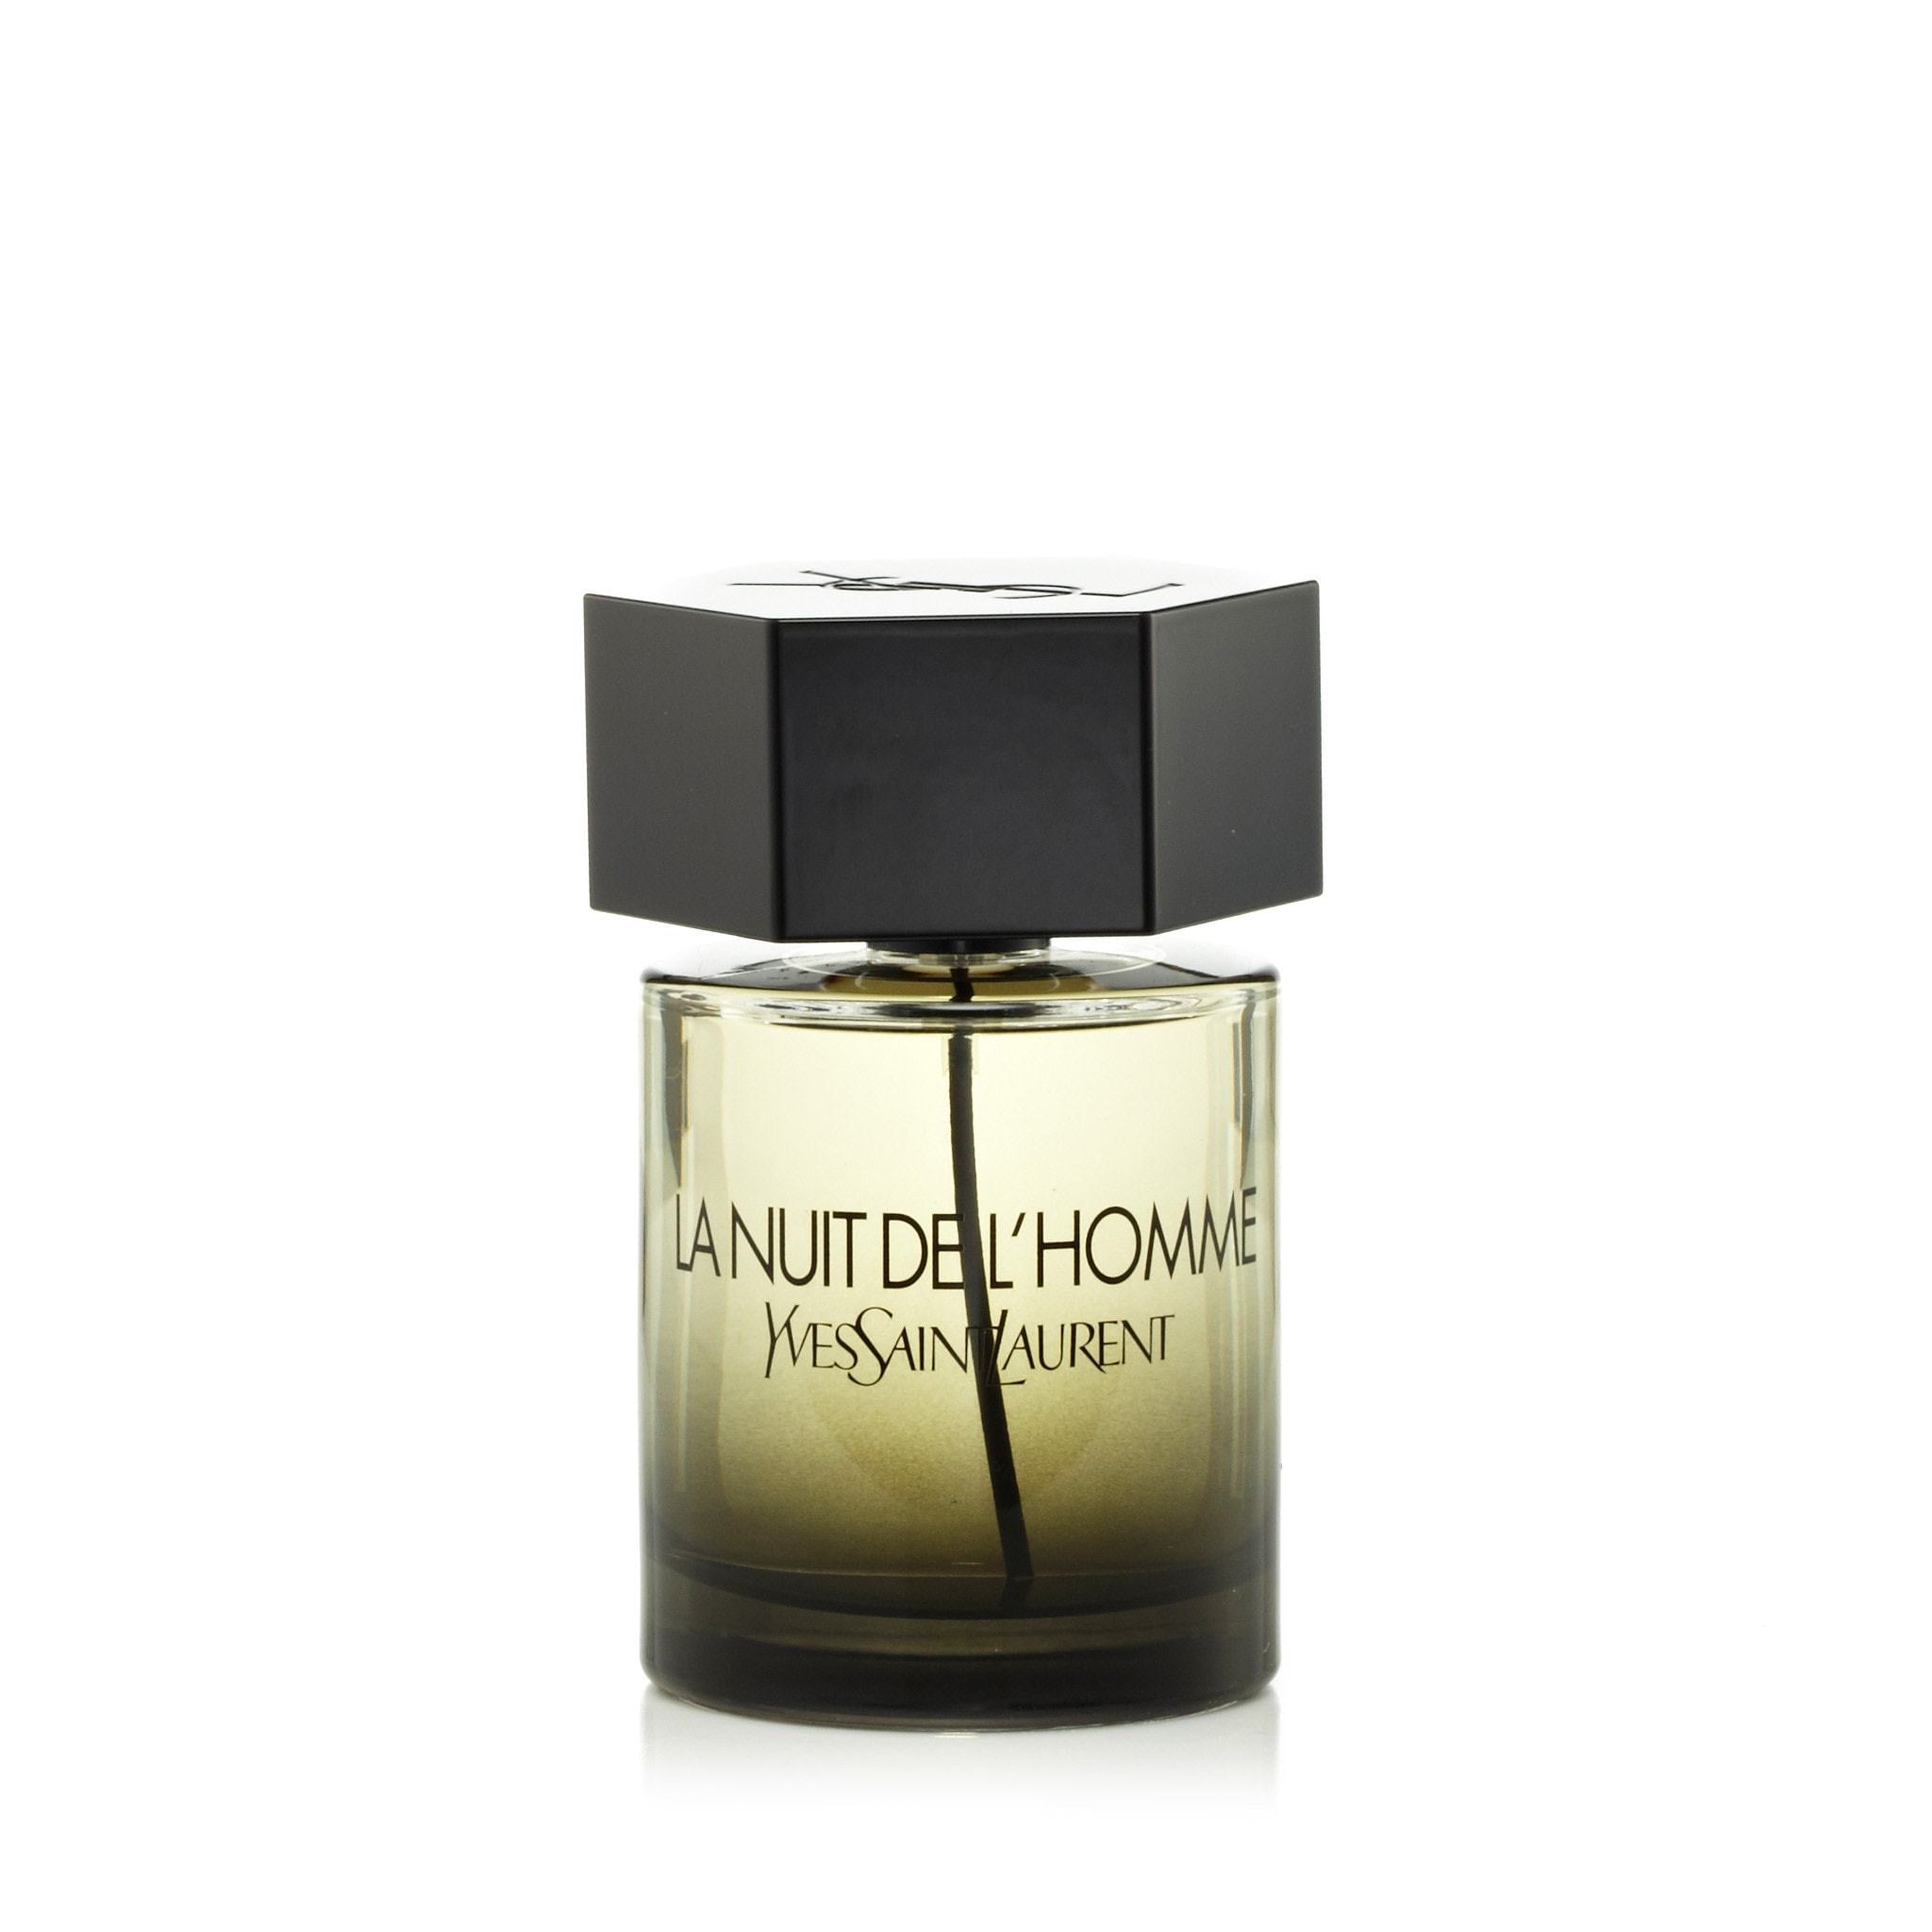 L'Homme Le Parfum - Yves Saint Laurent